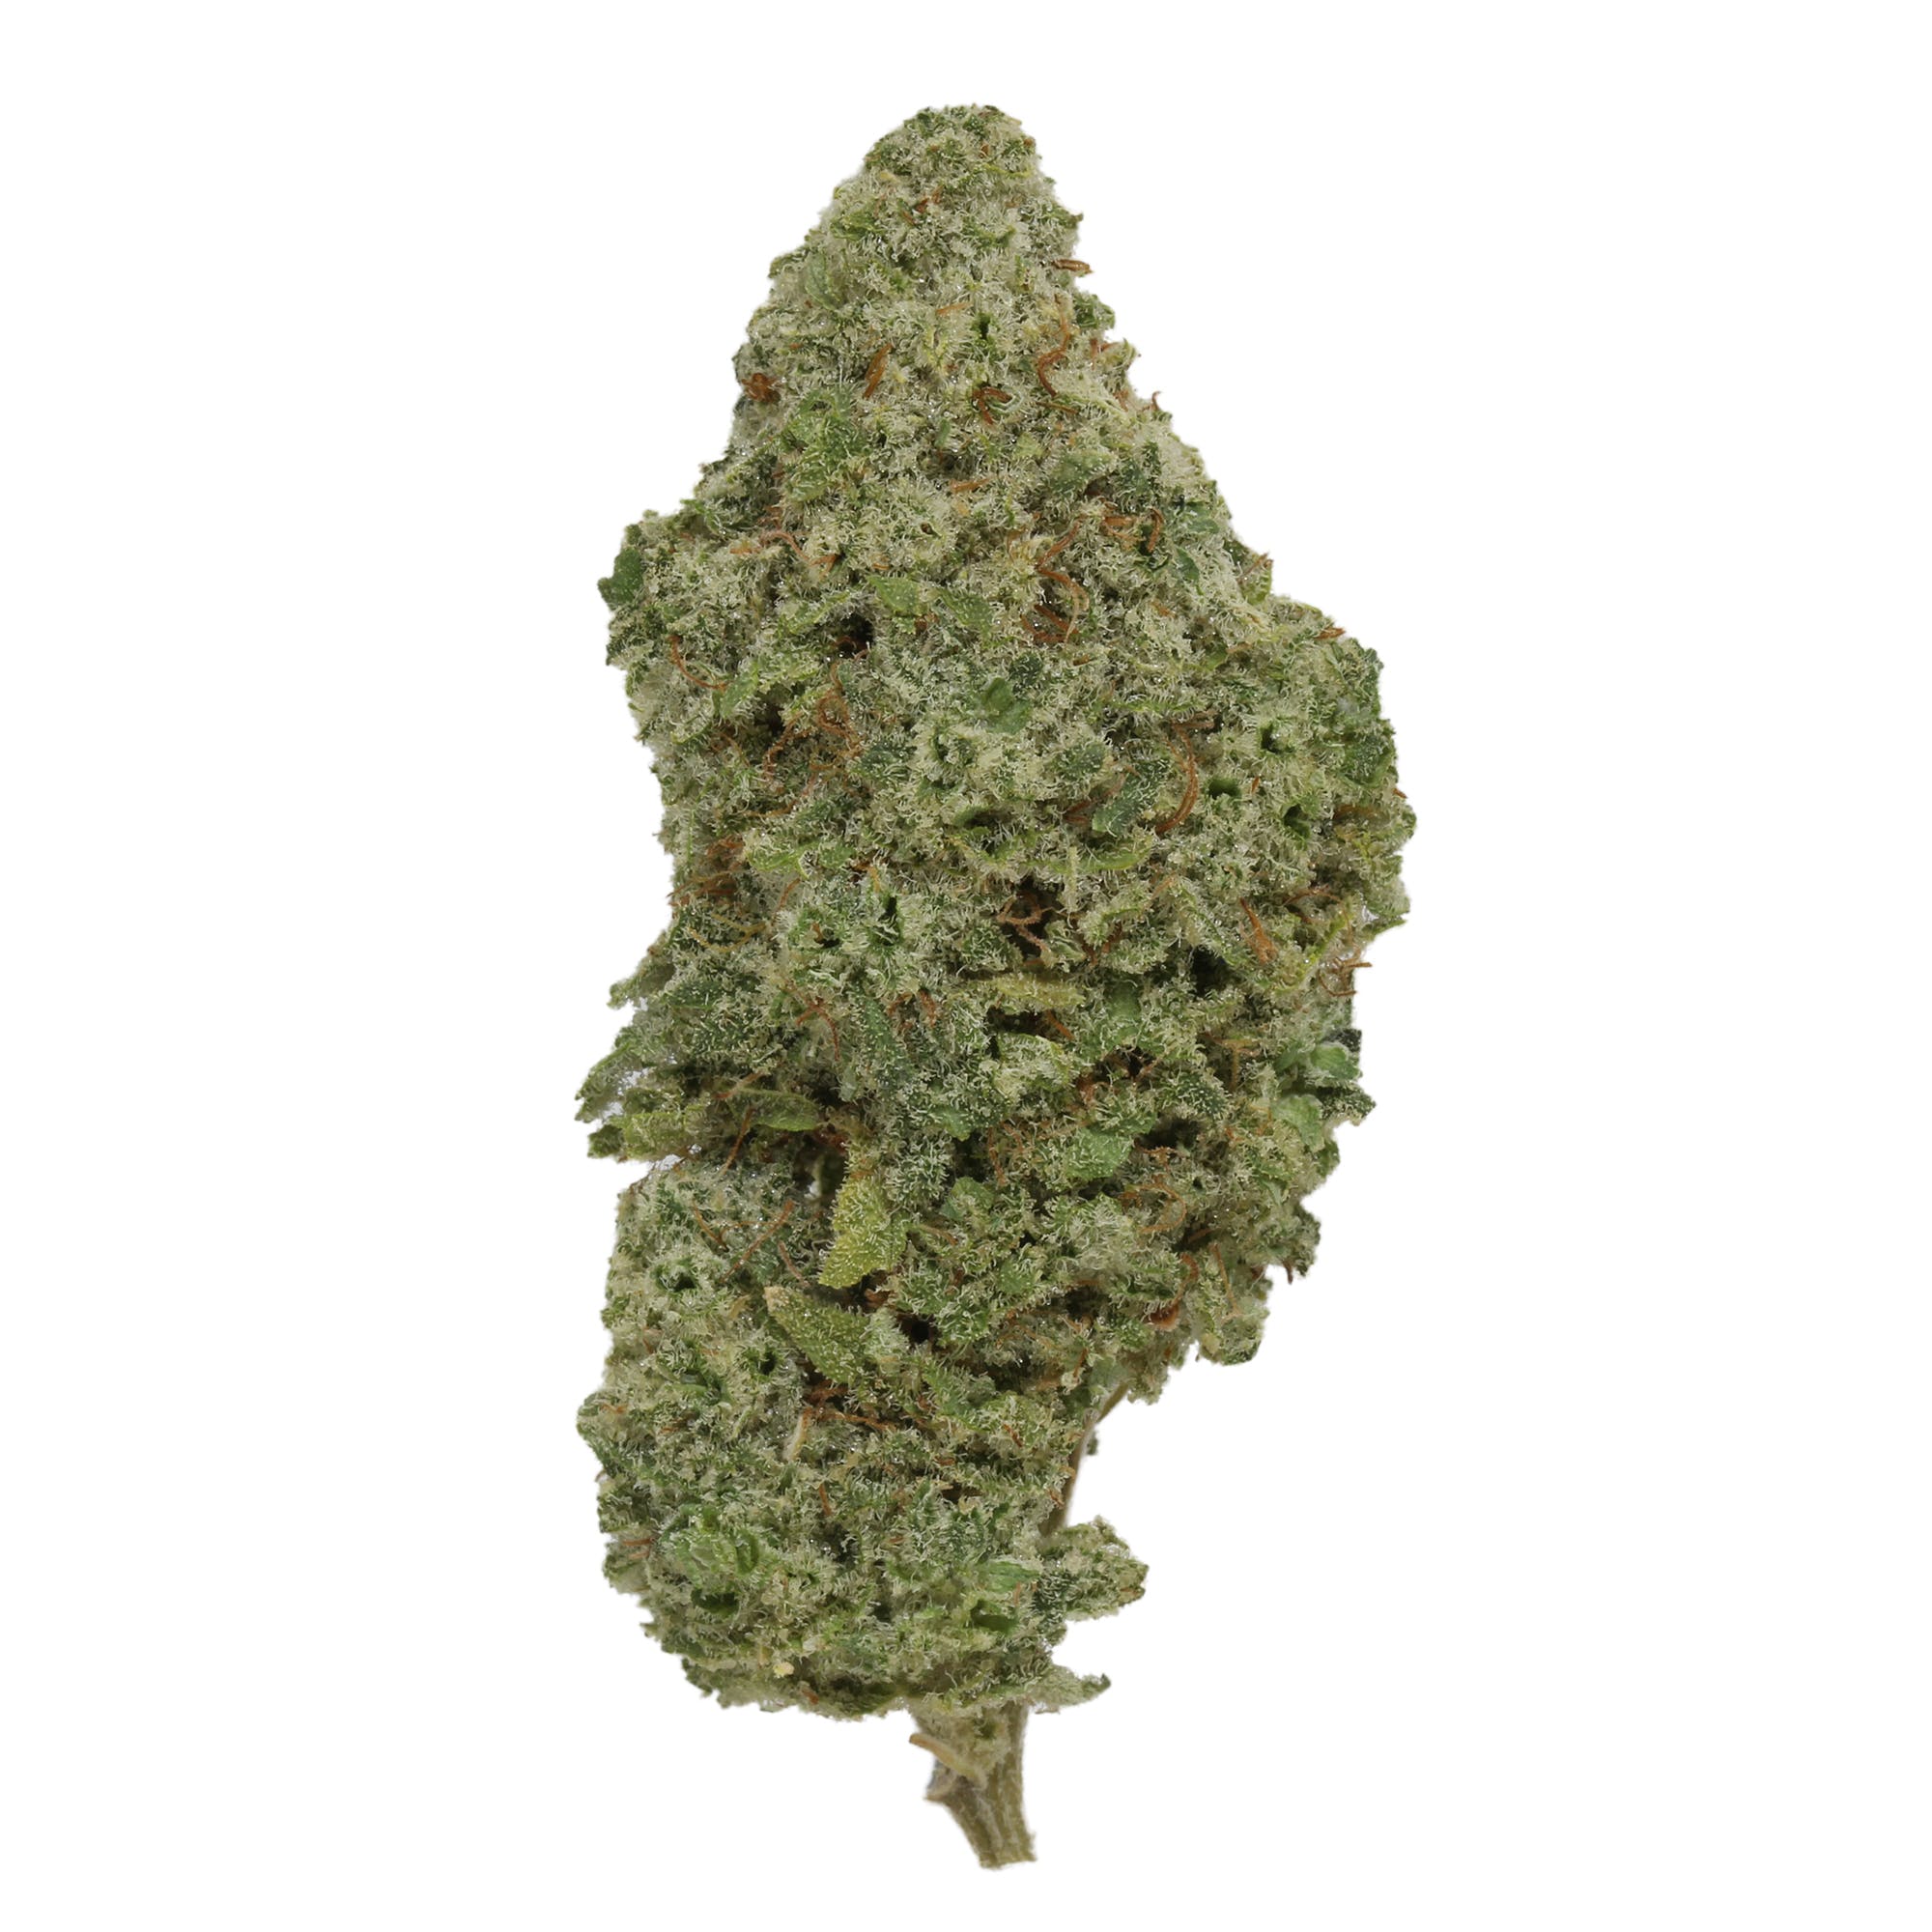 marijuana-dispensaries-49-kearny-street-2c-3rd-floor-san-francisco-mojito-by-up-north